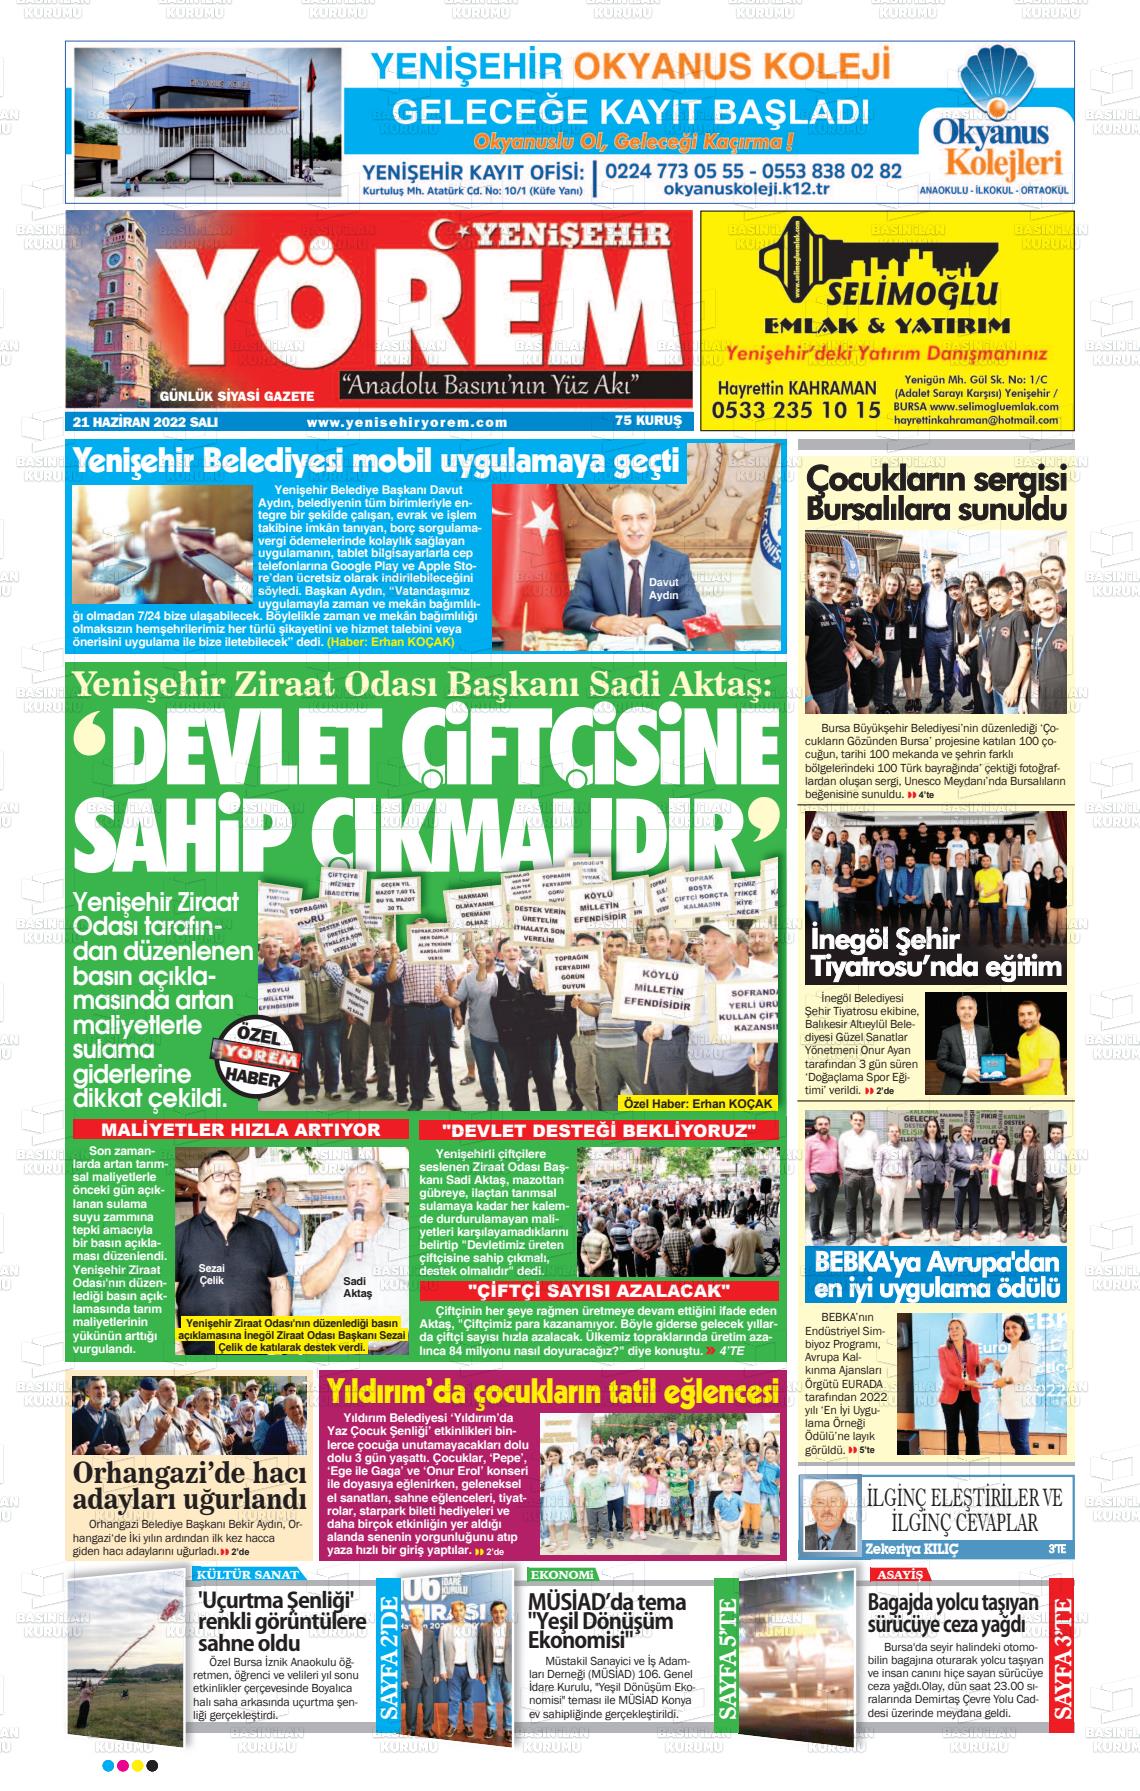 21 Haziran 2022 Yenişehir Yörem Gazete Manşeti